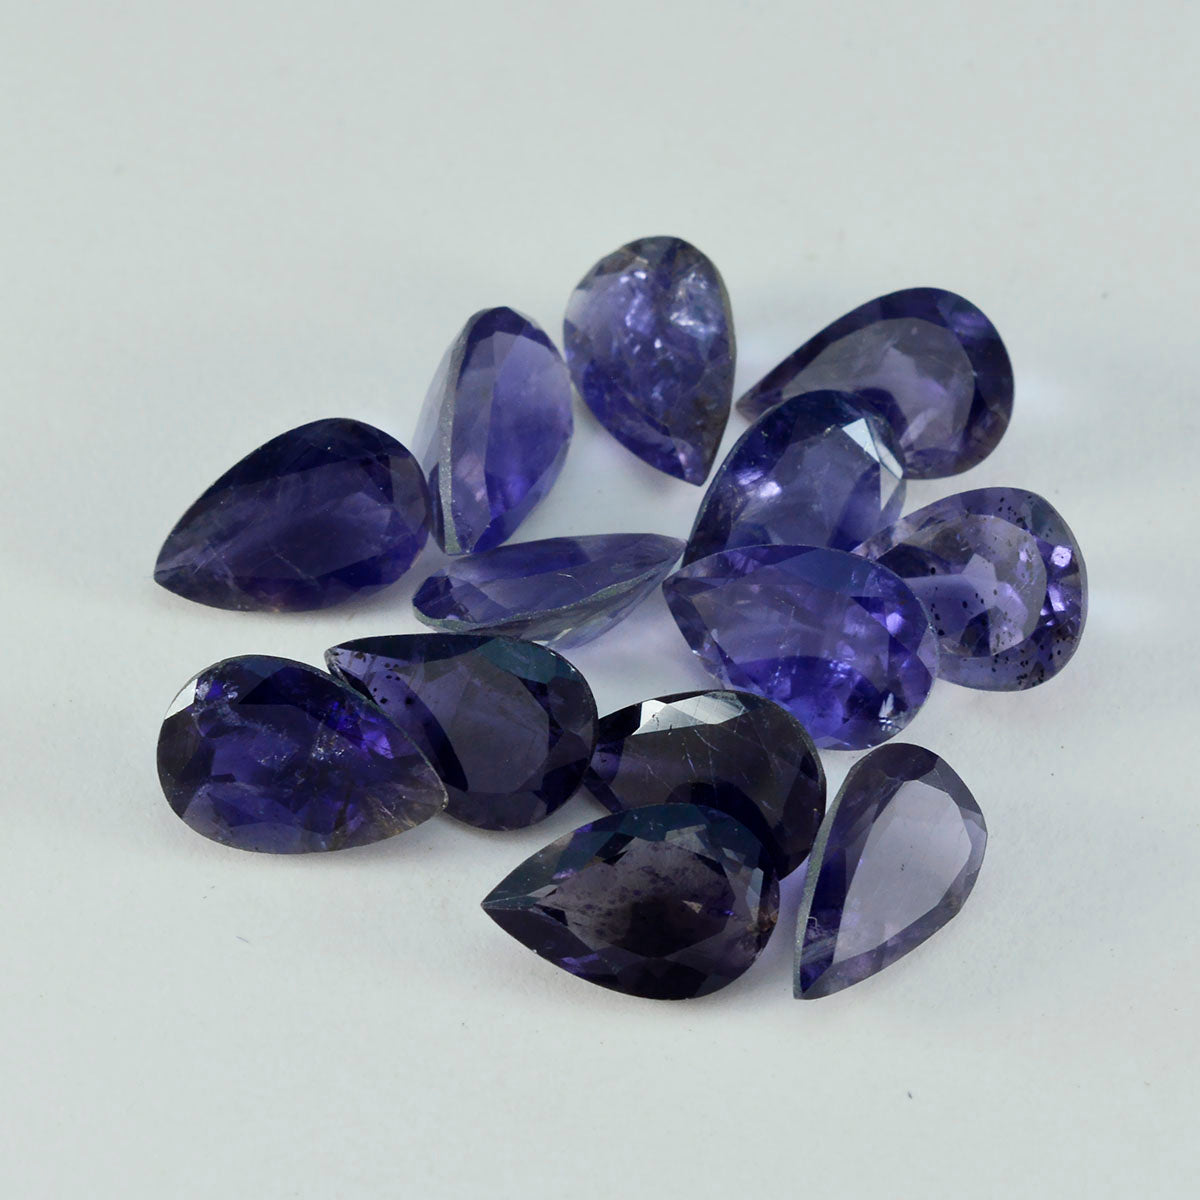 Riyogems 1 pièce d'iolite bleue à facettes 7x10mm en forme de poire, pierres précieuses en vrac de jolie qualité